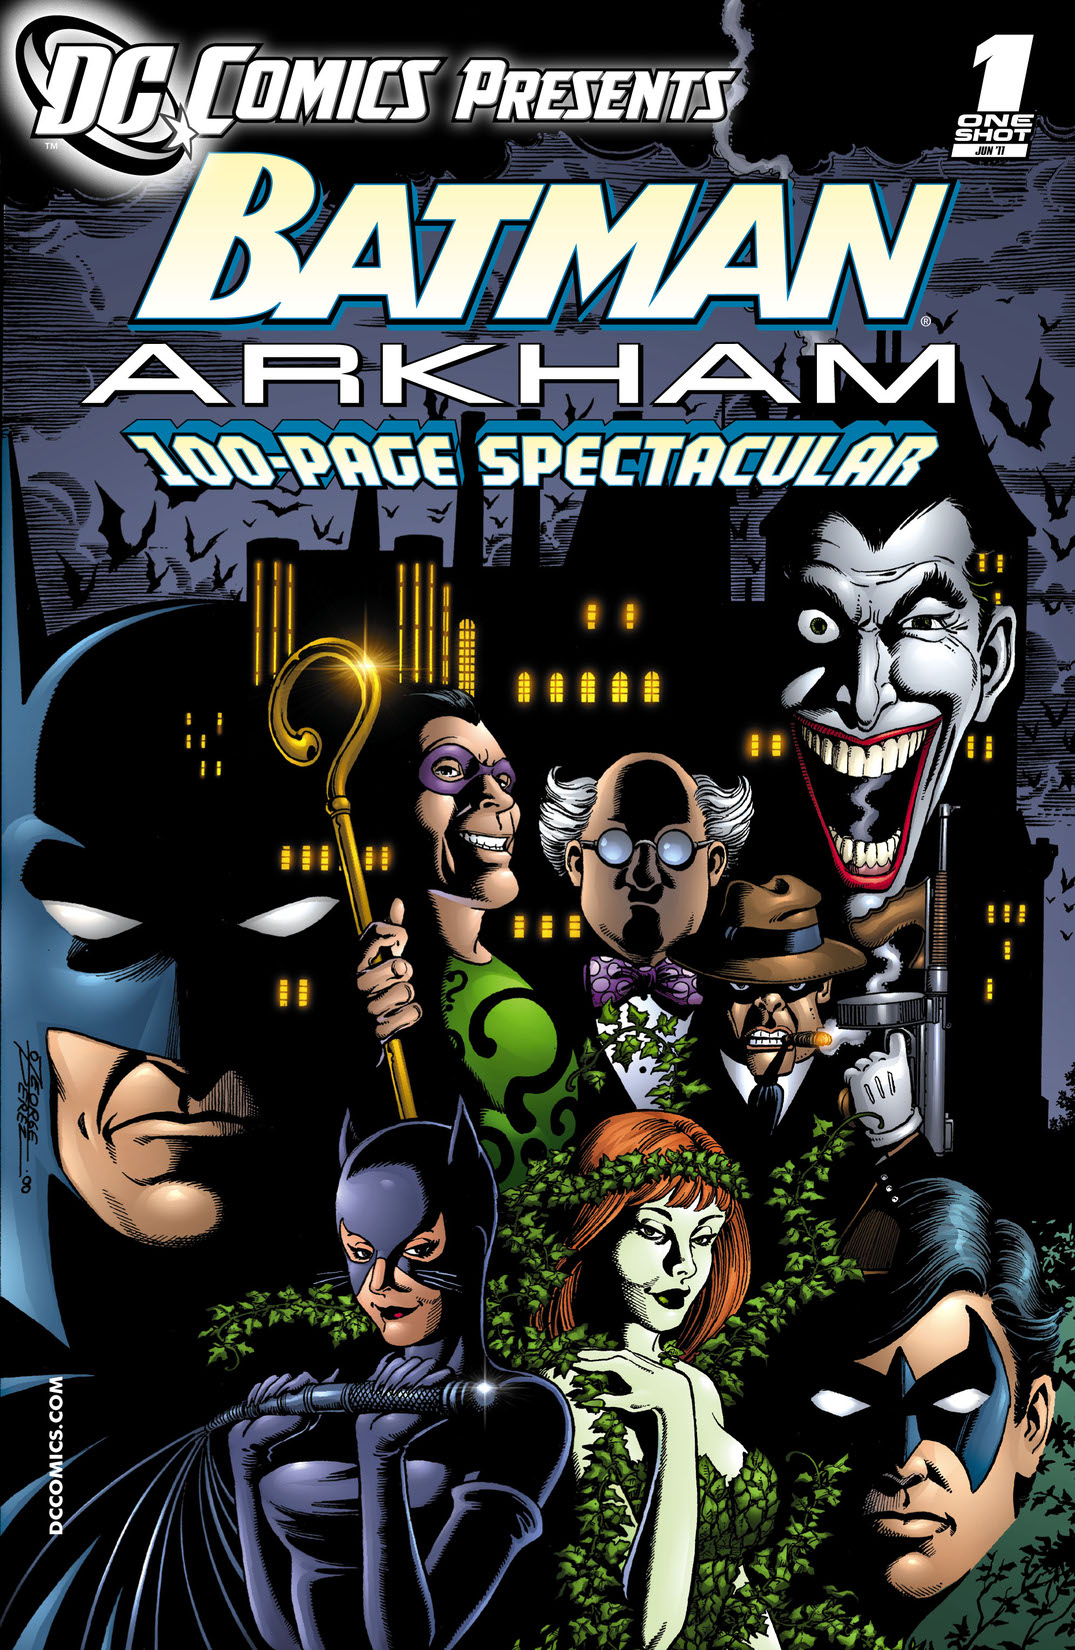 DC Comics Presents: Batman - Arkham (2011-) #1 preview images